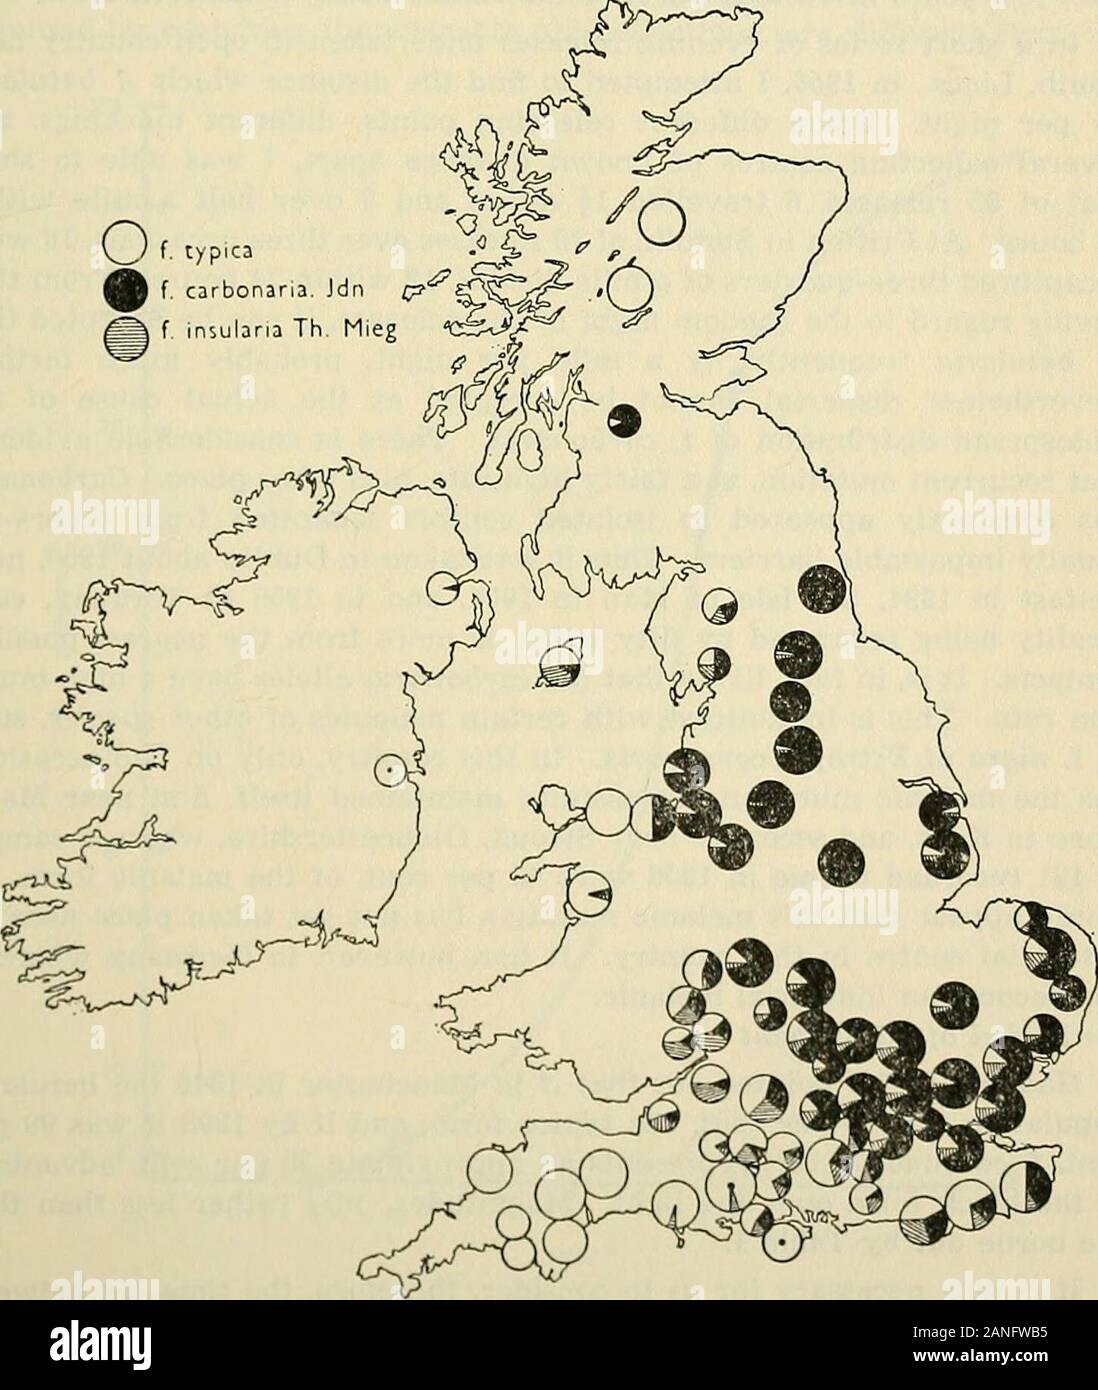 L'entomologo di registrare e ufficiale di variazione . ion ofCheshire, Lancashire, Cumberland e Westmorland (Kendal), arevirtually libero melanico. Un 12-anno di indagine LE FREQUENZE DI BISTON BETULARIA (L.) 201 (d) Scozia settentrionale non ha alcun betularia melanico ma nel Glasgowdistrict f. carbonaria è di circa il 90 per cento. (E) In Irlanda, carbonaria è stata registrata prima nel 1894 dal quartiere theBelfast e anche più tardi di Dublino, ma è raro. Esso hasbeen che non si trovano in nessun altro posto. Non sembra avere molto diffuse thereyet. (F) La mappa mostra più clines in esecuzione fuori dalla maggiore Foto Stock